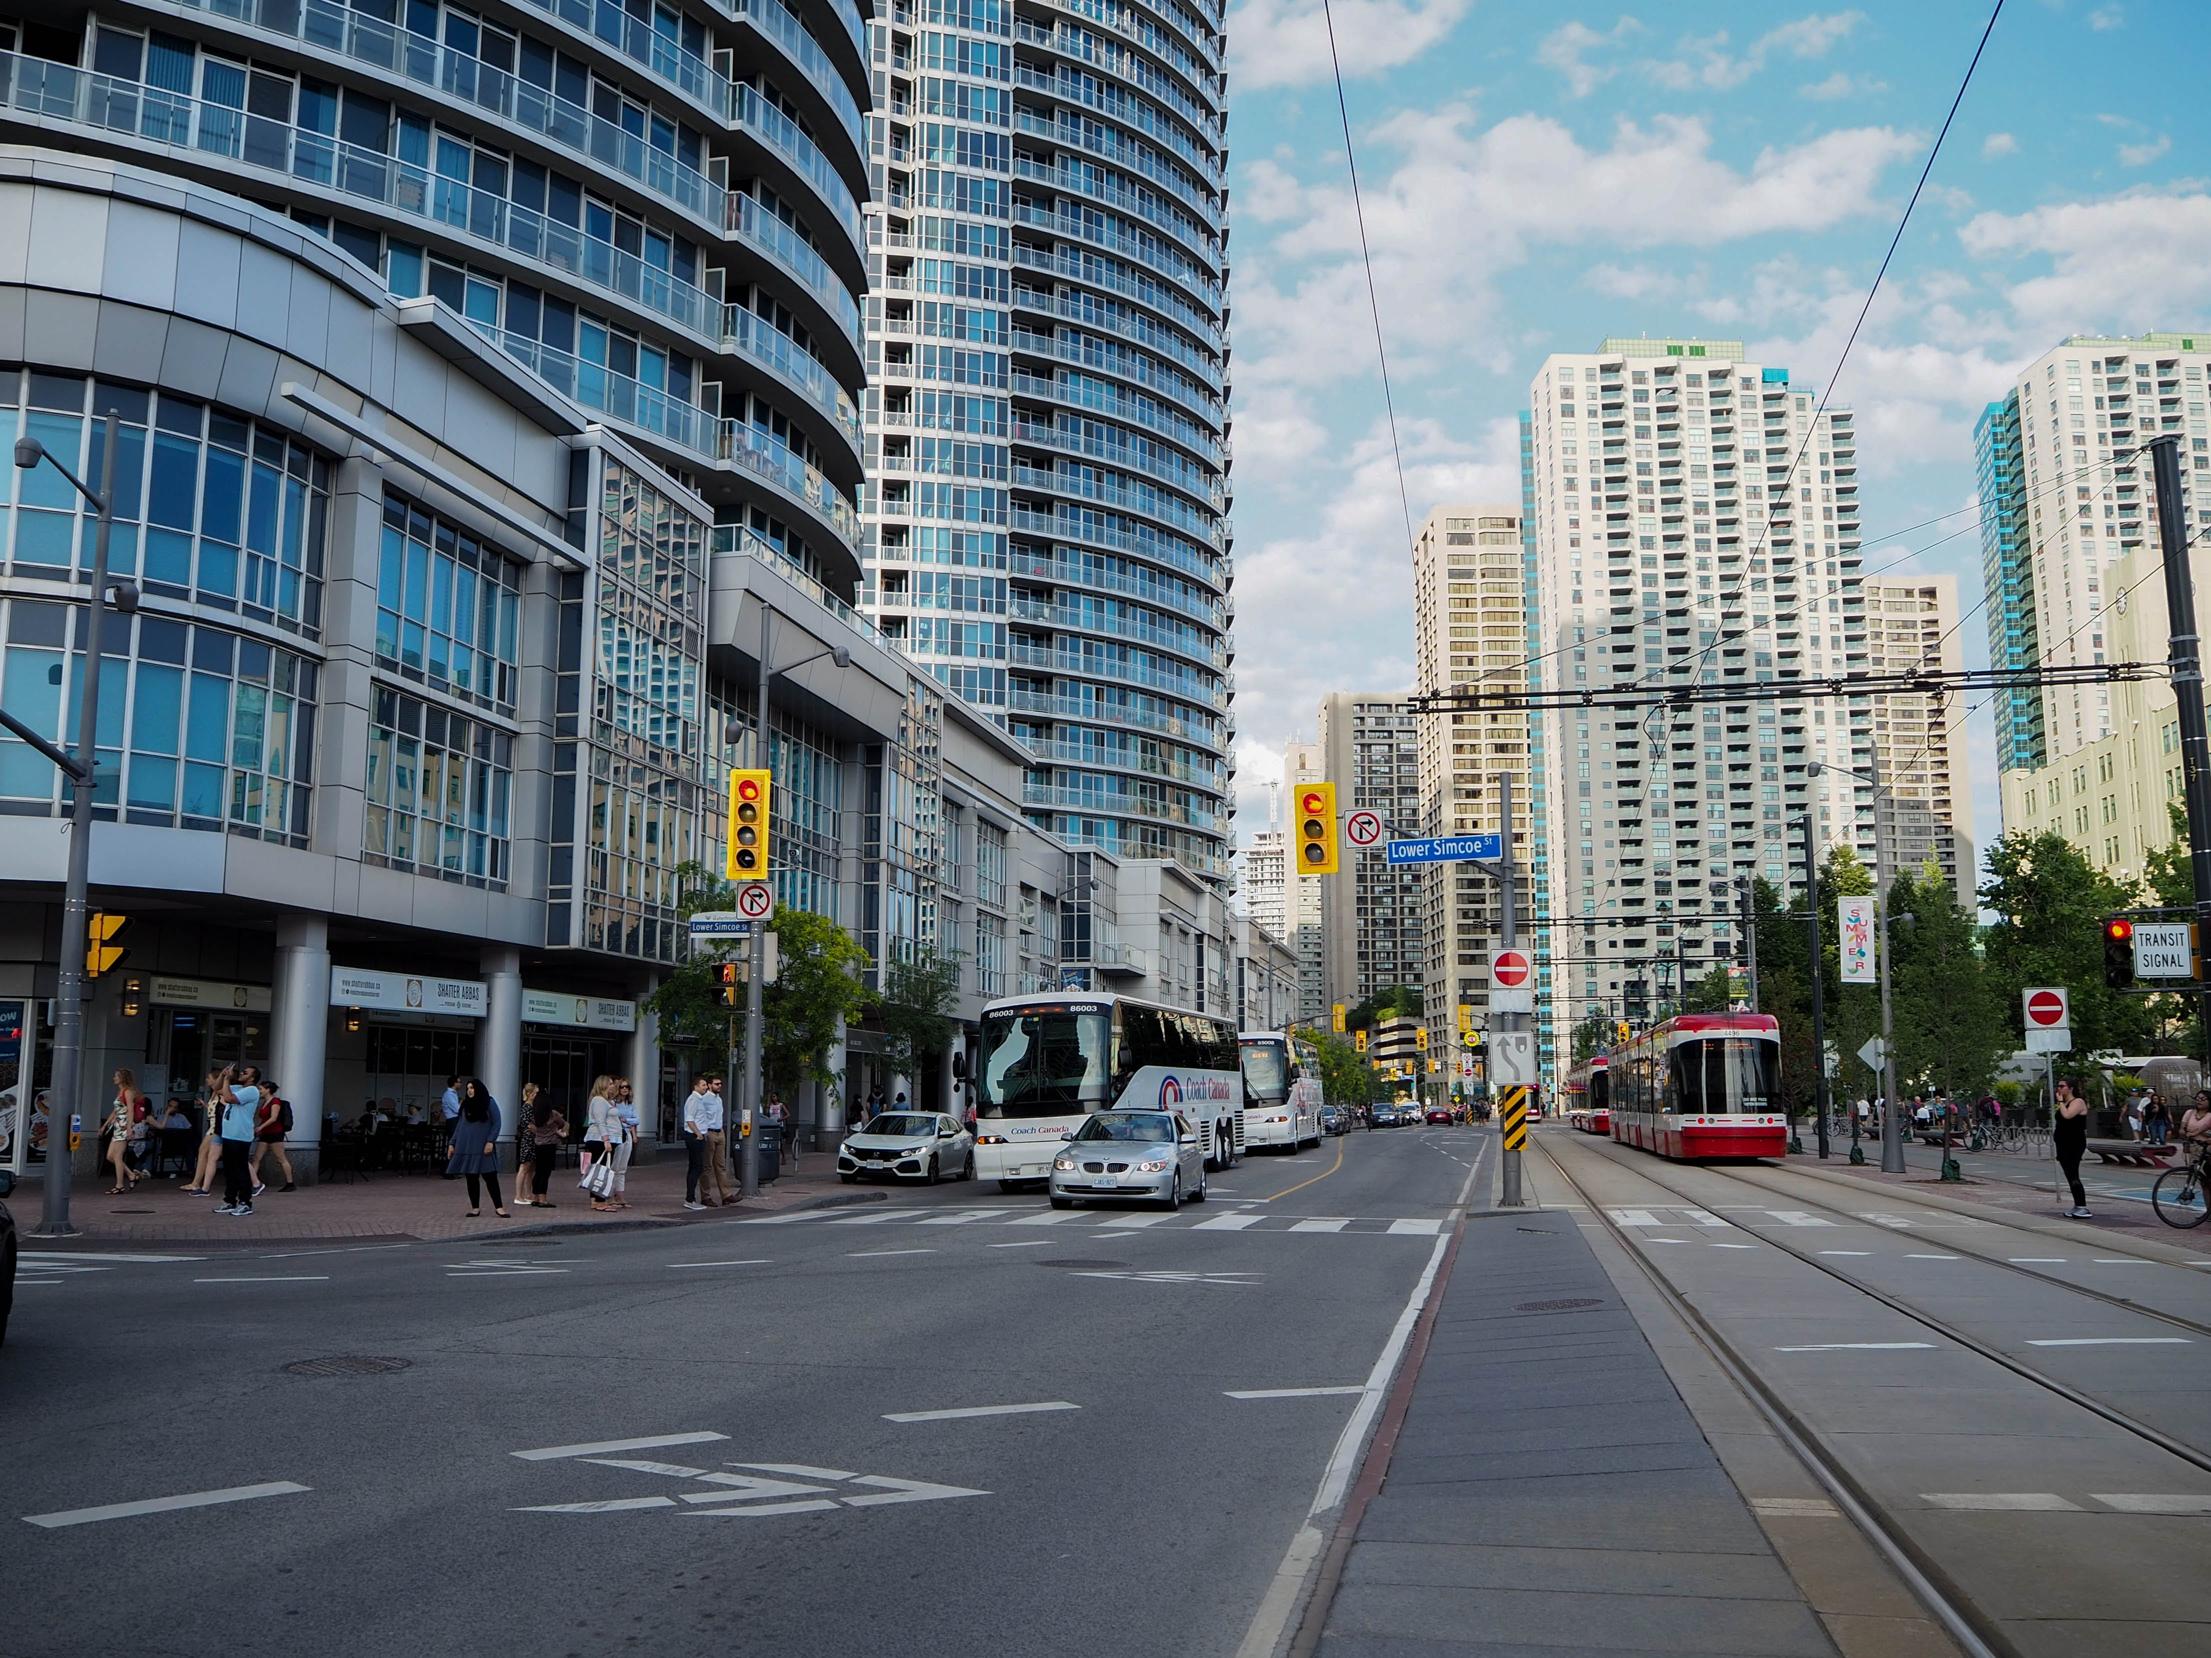 Autobus e tram: copertura della città e bigliettazione